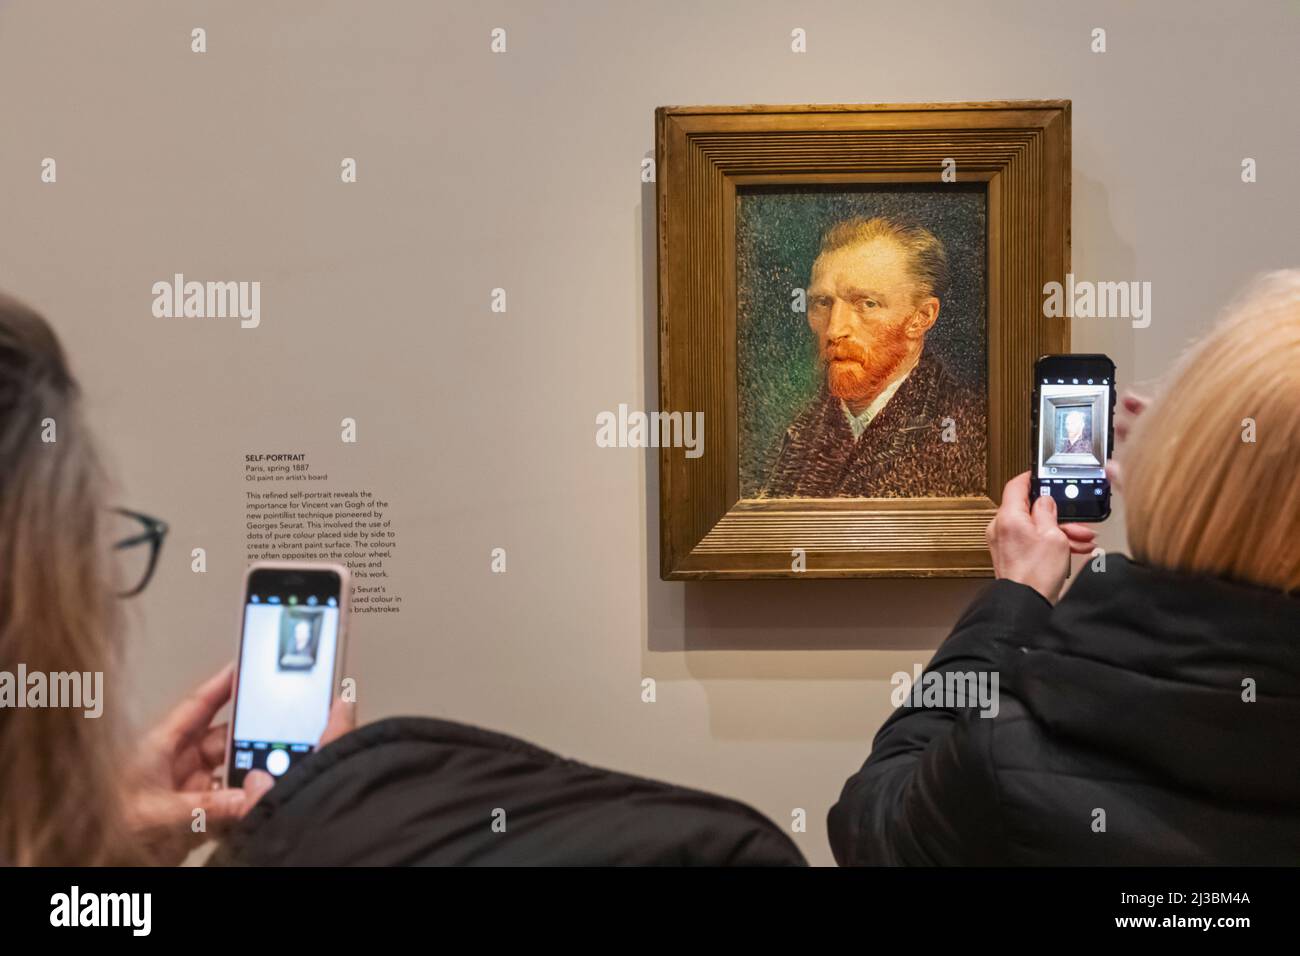 Galería Visitantes Tomando fotos con smartphone de una pintura autorretrato de Vincent van Gogh Foto de stock